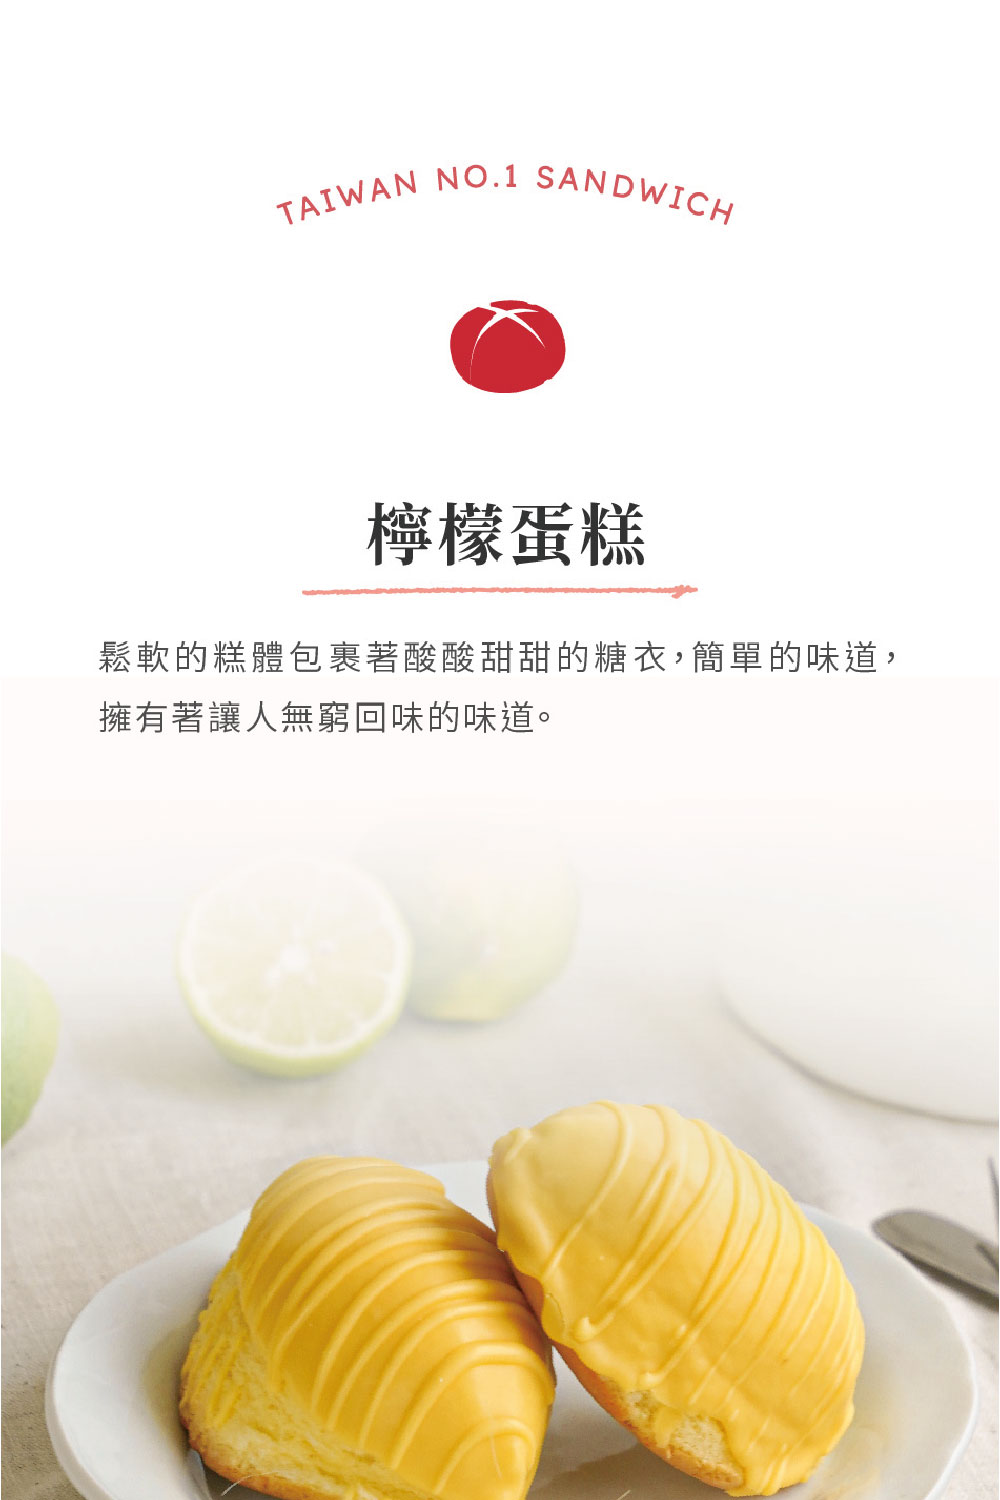 洪瑞珍 檸檬蛋糕禮盒3盒組(每盒5個共3盒 台灣土產 佳節伴